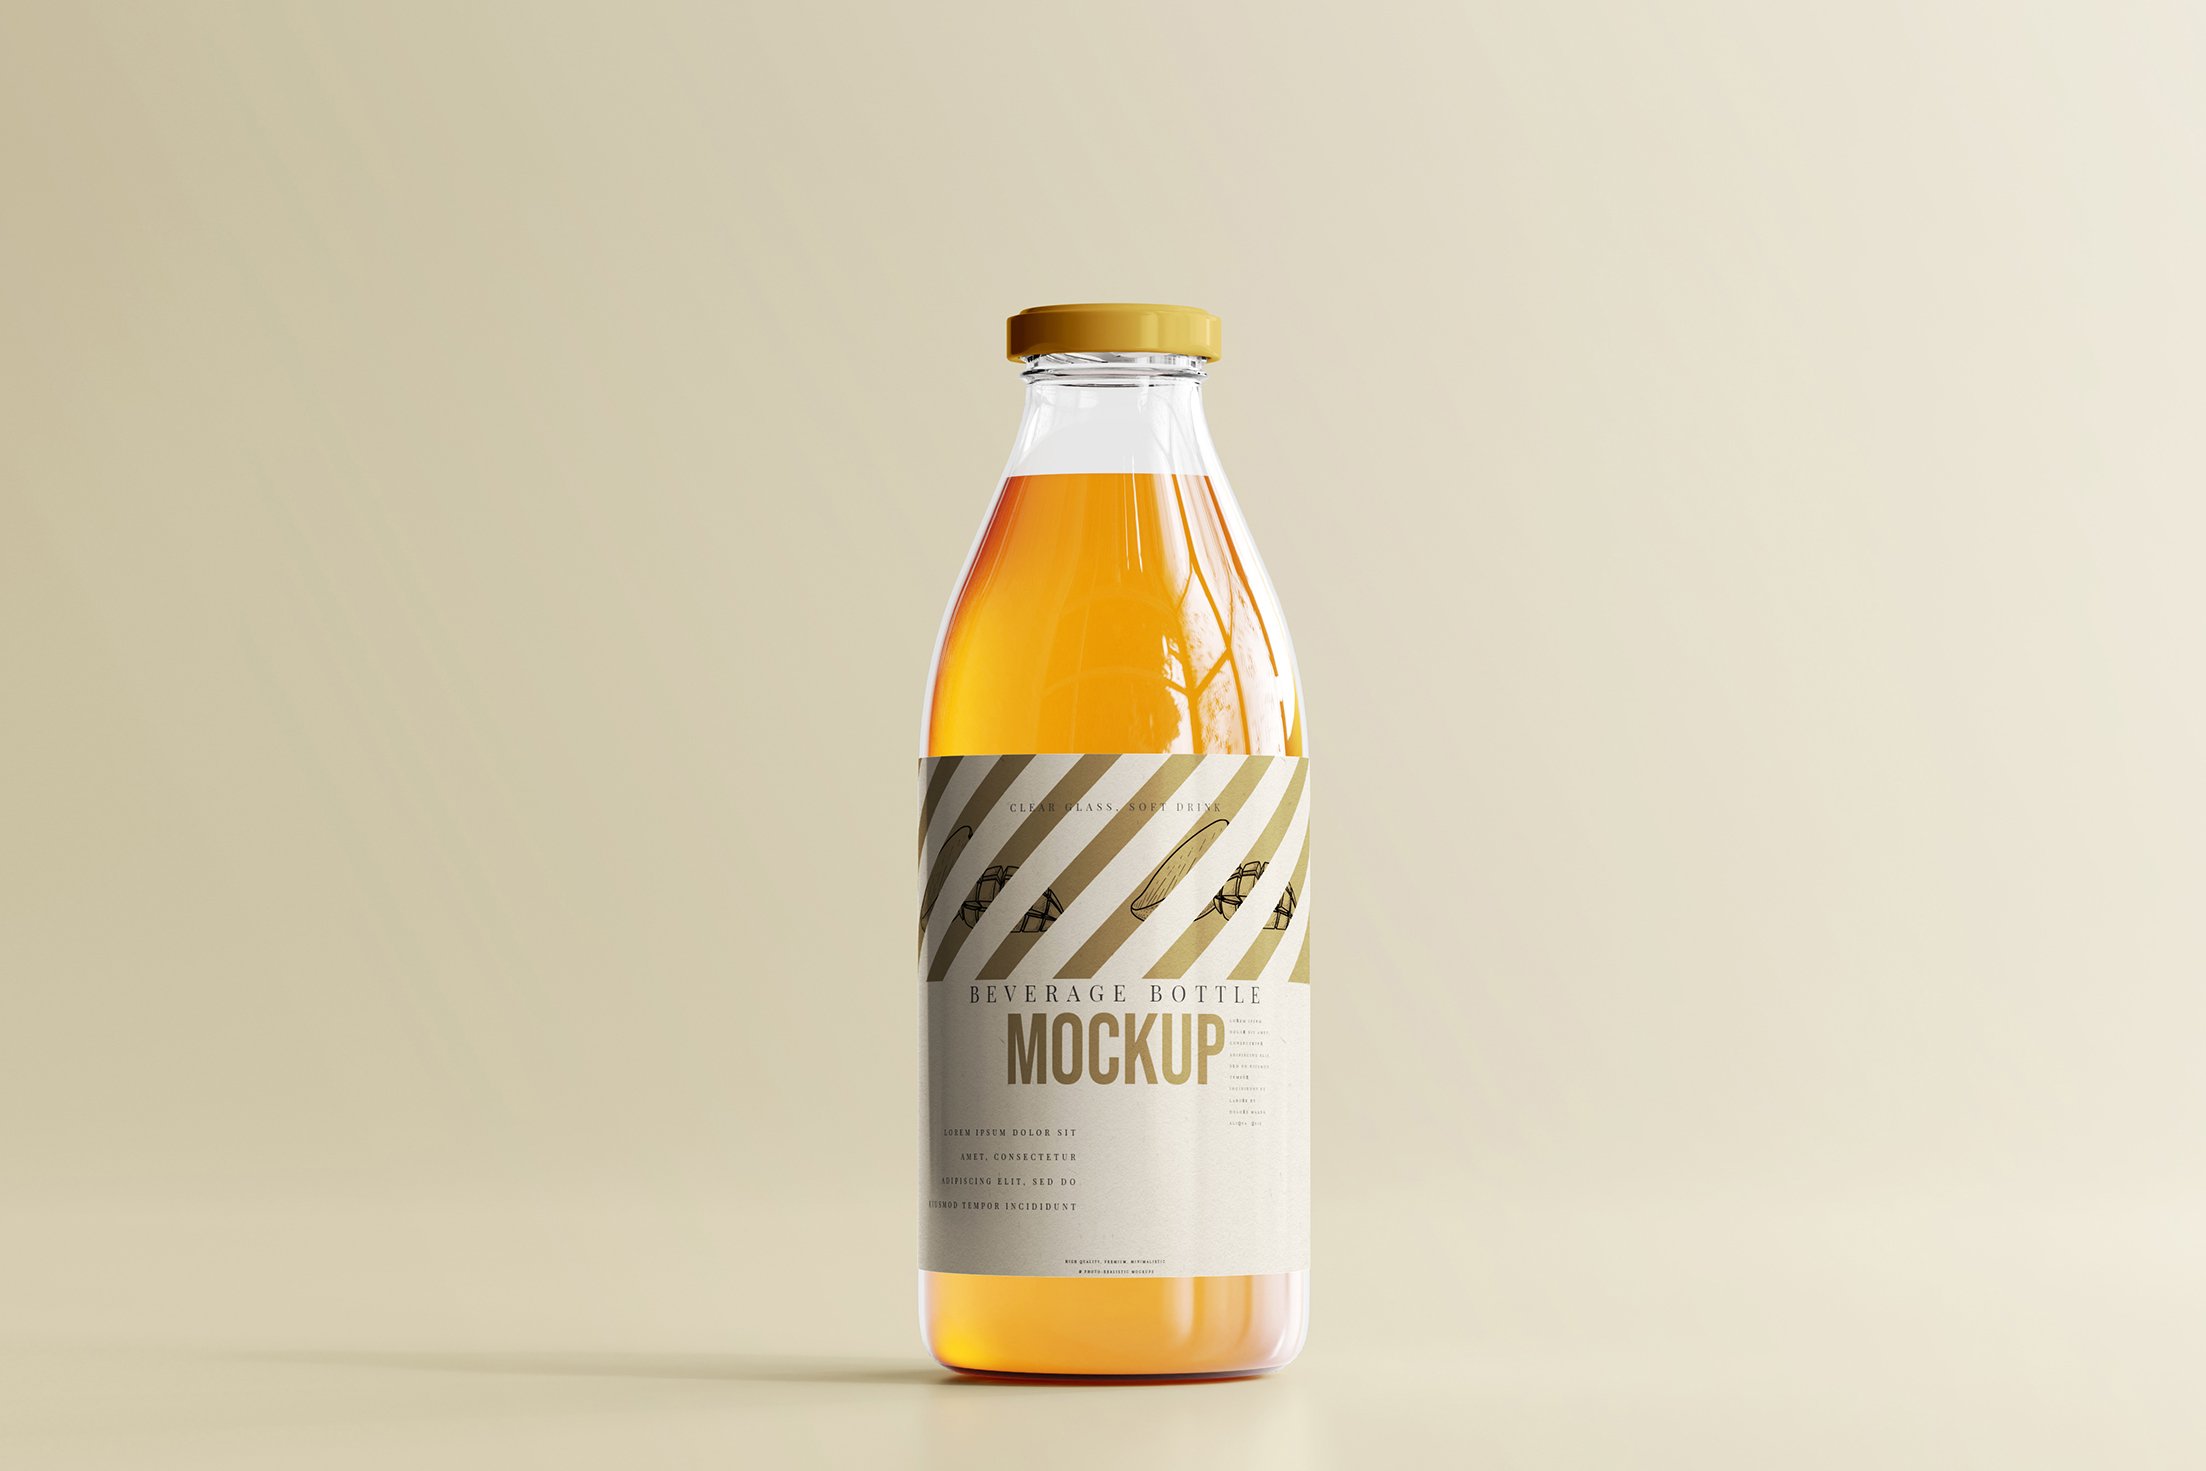 时尚透明果汁饮料玻璃瓶标签贴纸设计展示样机素材 glass beverage